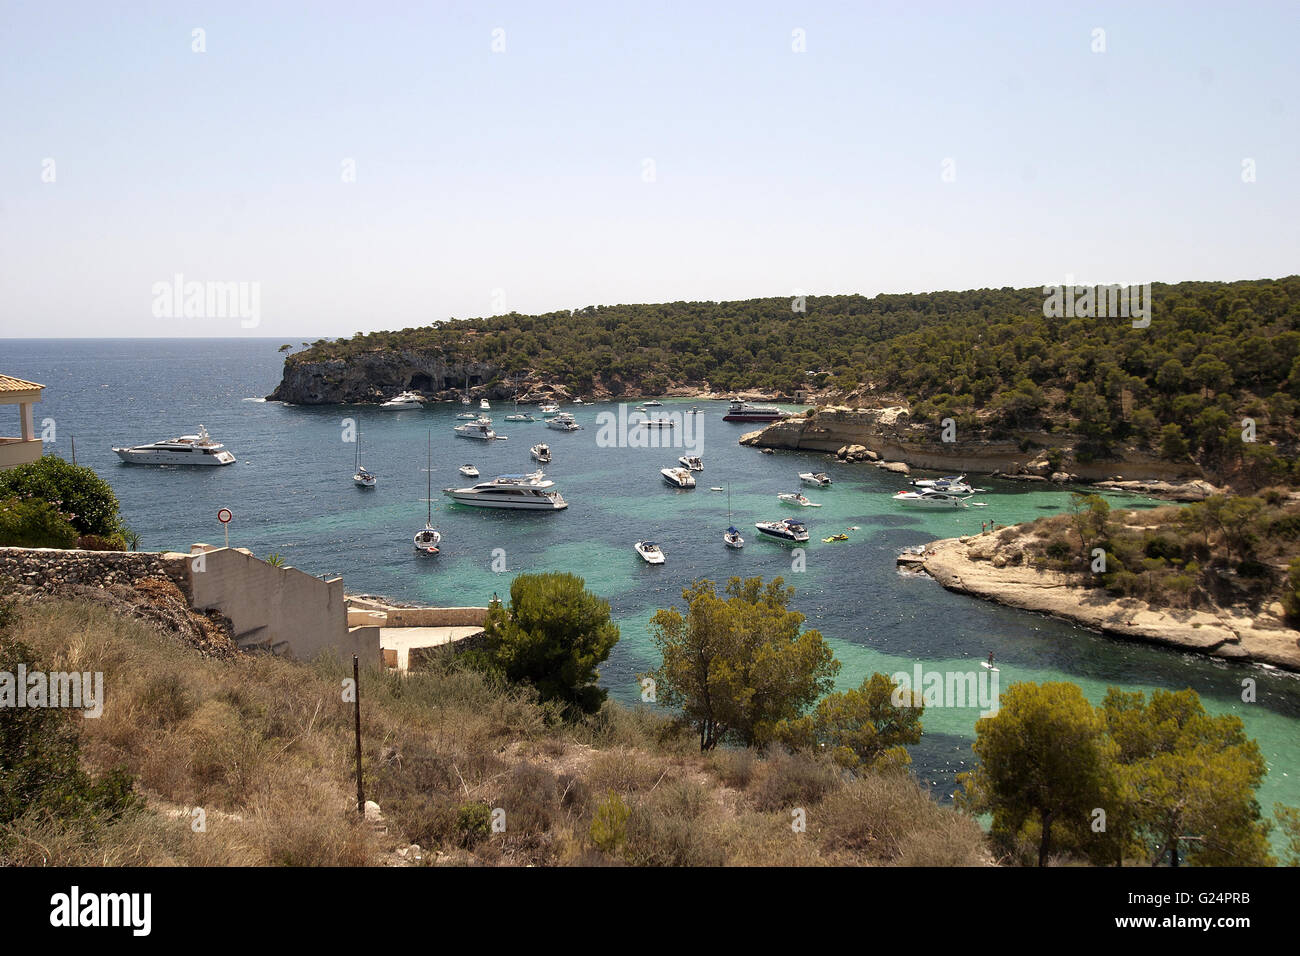 Una bella foto di una baia con barche in Palma de Mallorca, Spagna, Mare, turismo, vacanze, barche, acqua cristallina, il paradiso Foto Stock